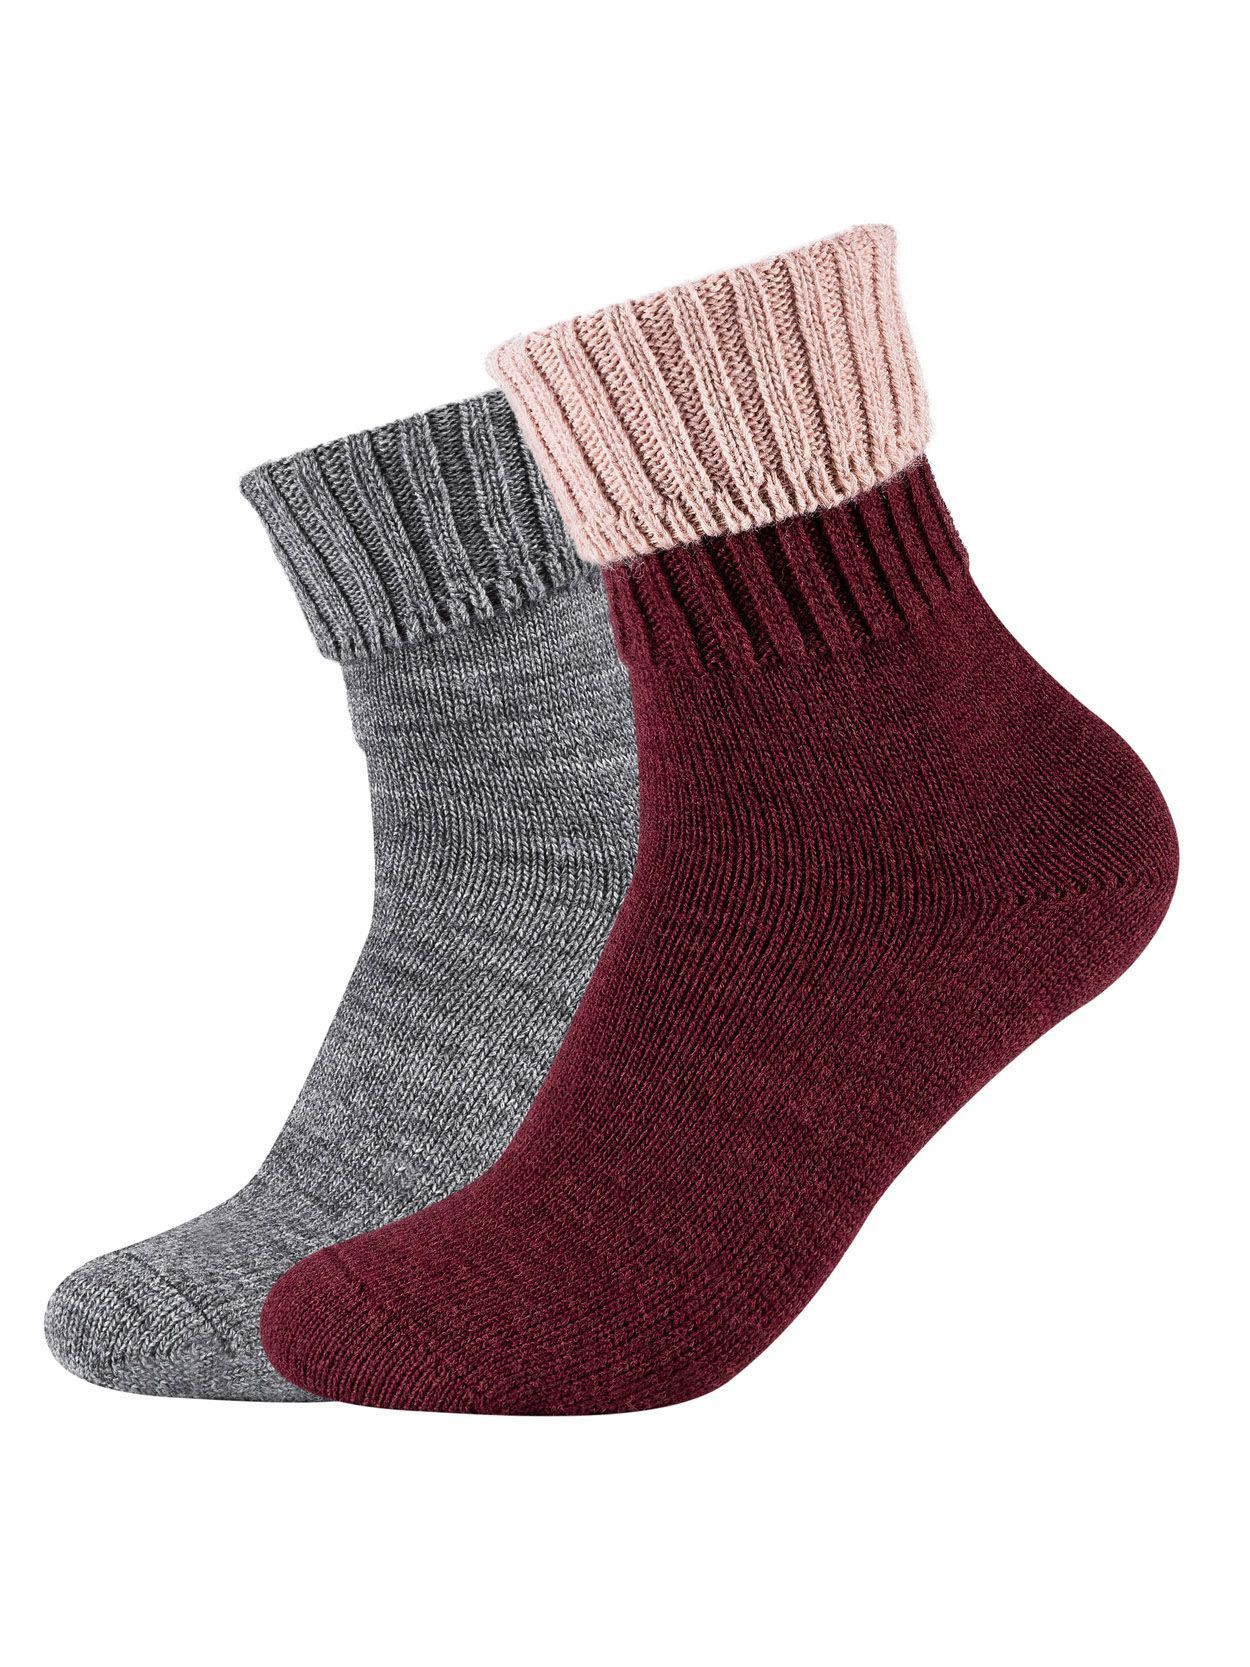 Warme Socken Red Sockenduo Camano 2er-Pack - im Oxblood